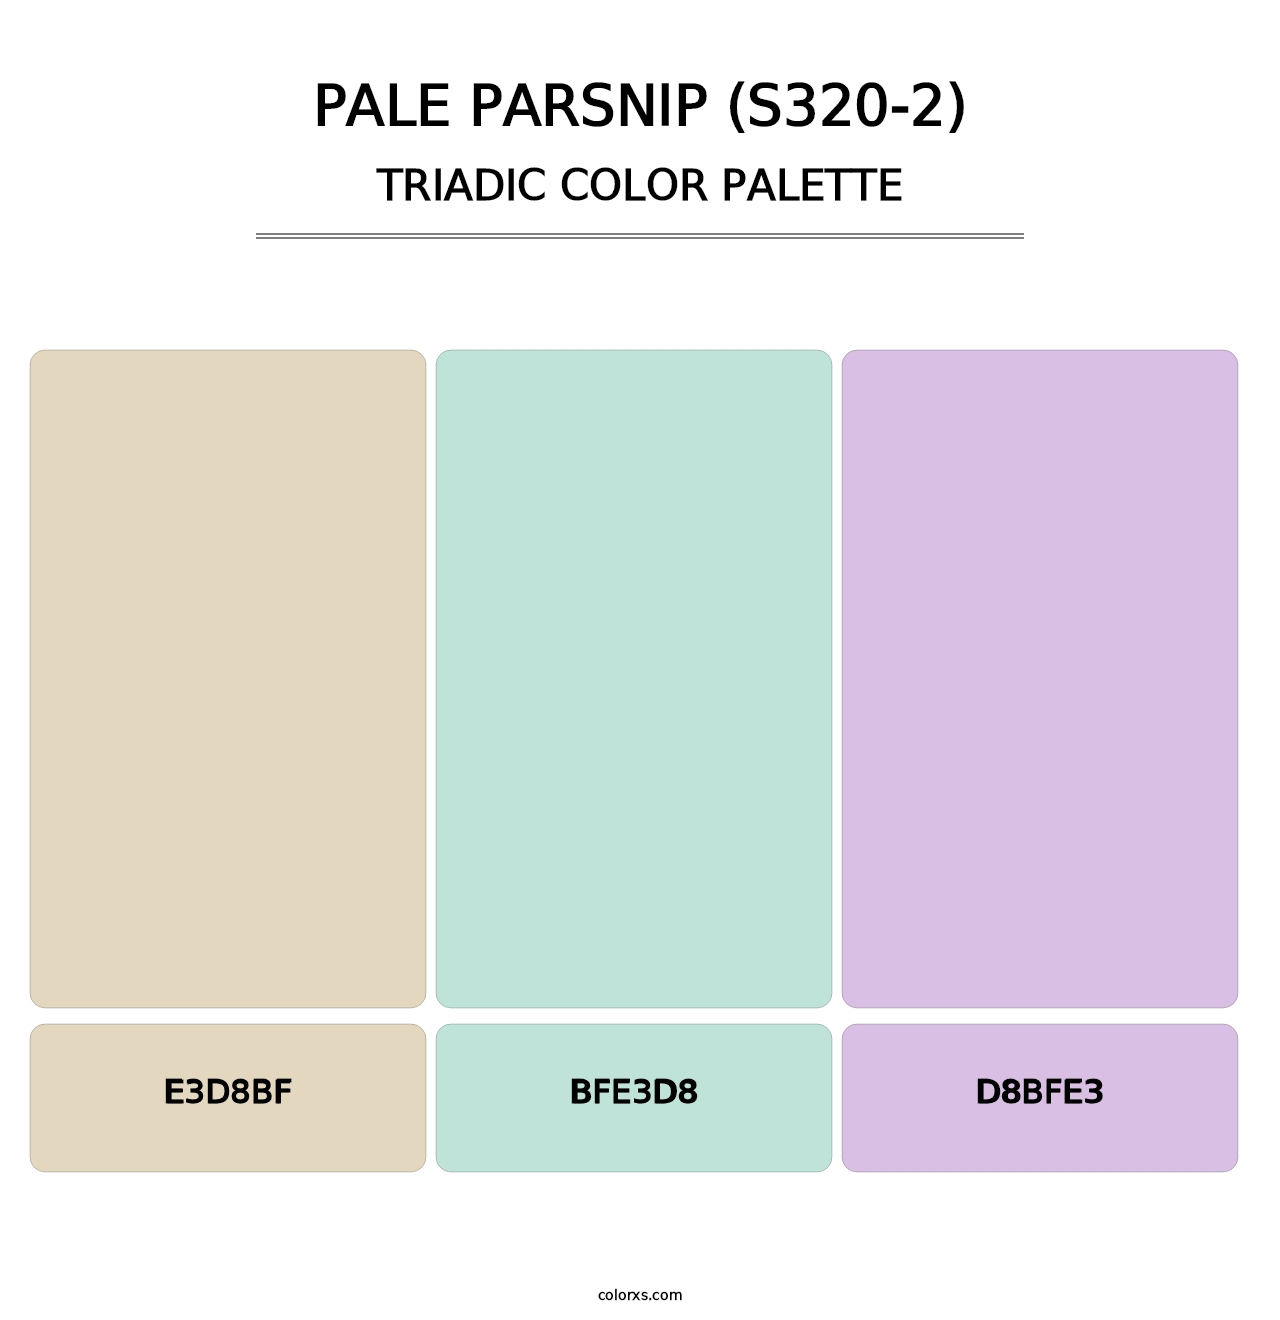 Pale Parsnip (S320-2) - Triadic Color Palette